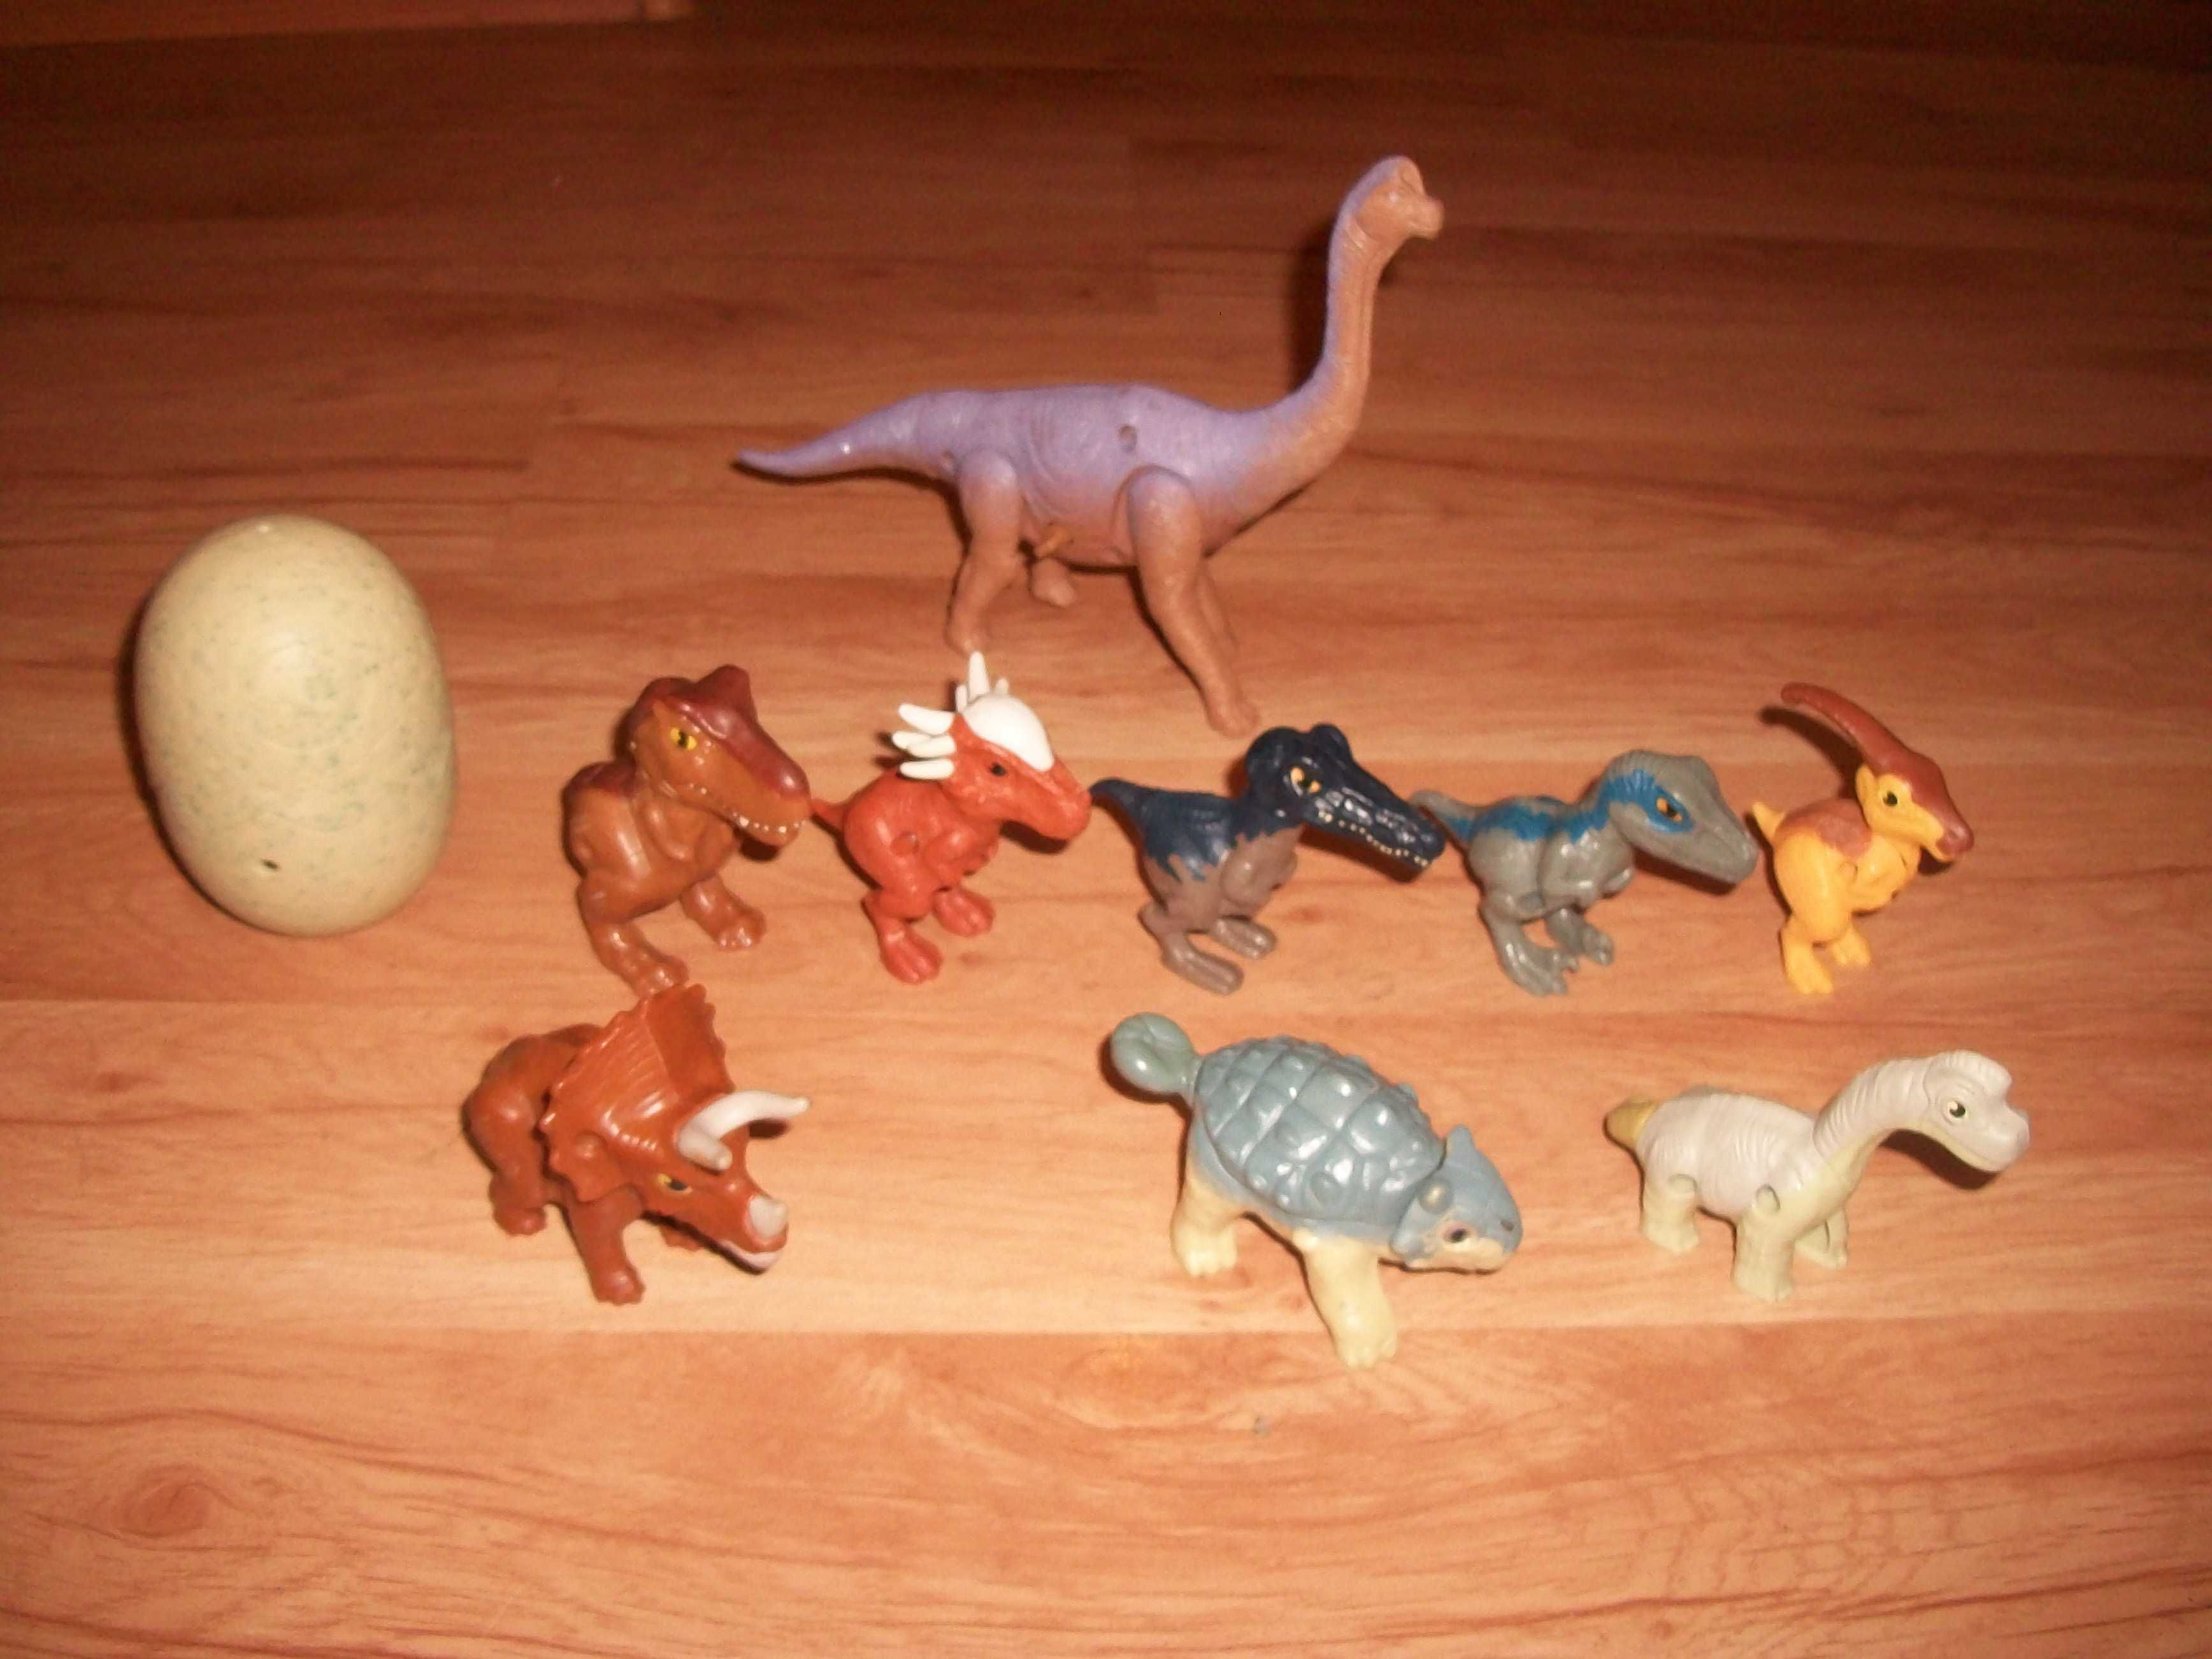 динозавры,мир юрского периода